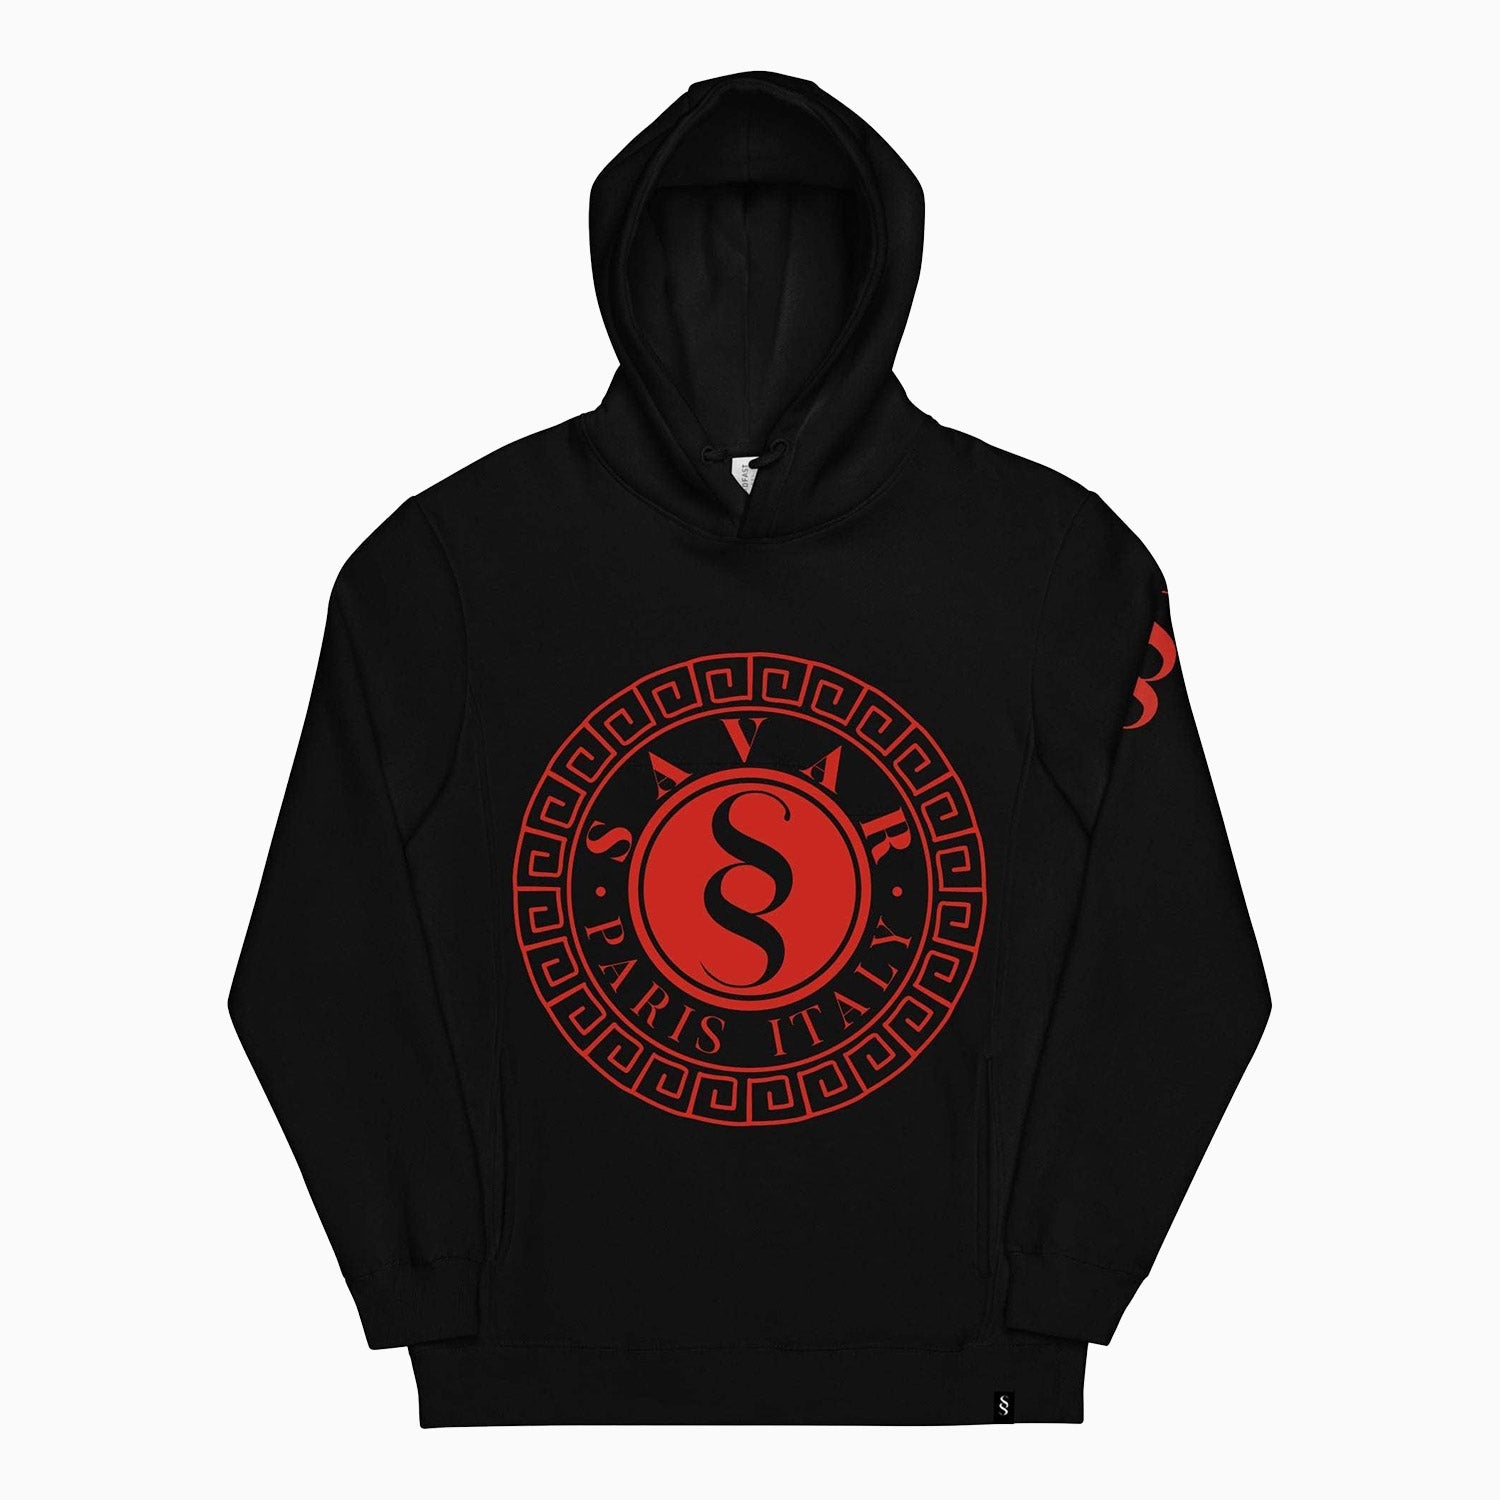 emblem-design-printed-pull-over-black-hoodie-for-men-sh103-010